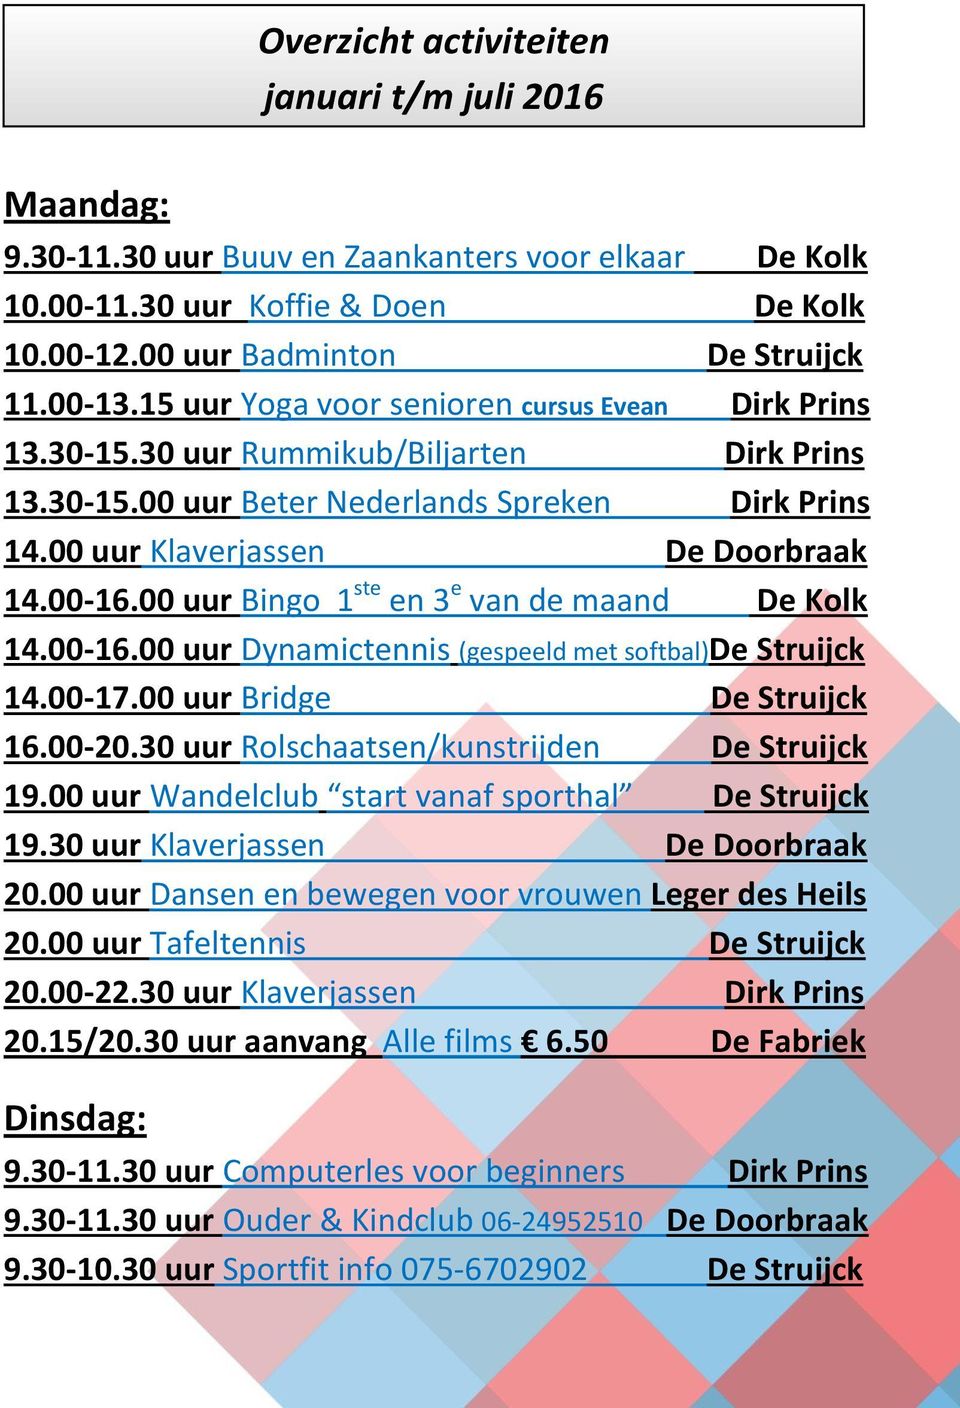 00 uur Bingo 1 ste en 3 e van de maand De Kolk 14.00-16.00 uur Dynamictennis (gespeeld met softbal)de Struijck 14.00-17.00 uur Bridge De Struijck 16.00-20.